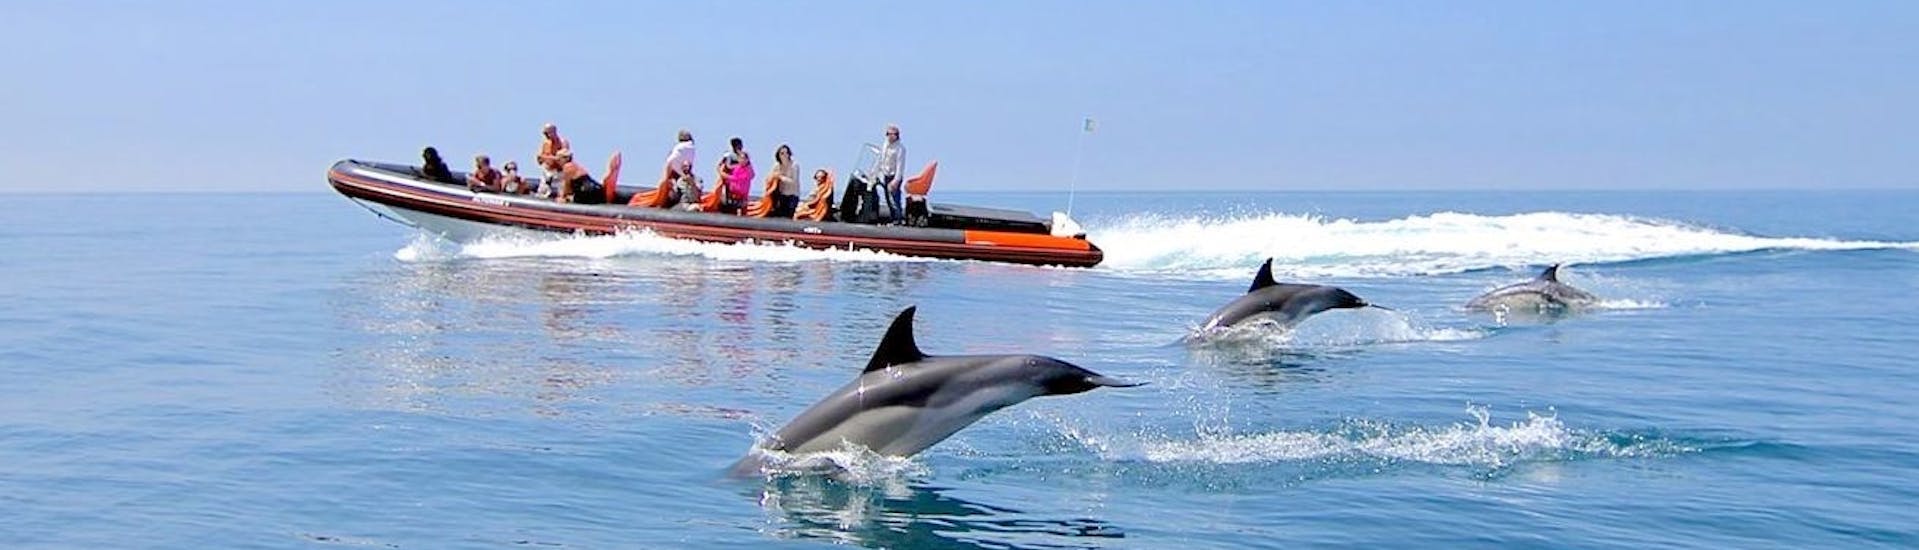 Gente a bordo de nuestro barco durante un Paseo en barco a las cuevas del Algarve con avistamiento de delfines con Vilamoura Watersports Centre.